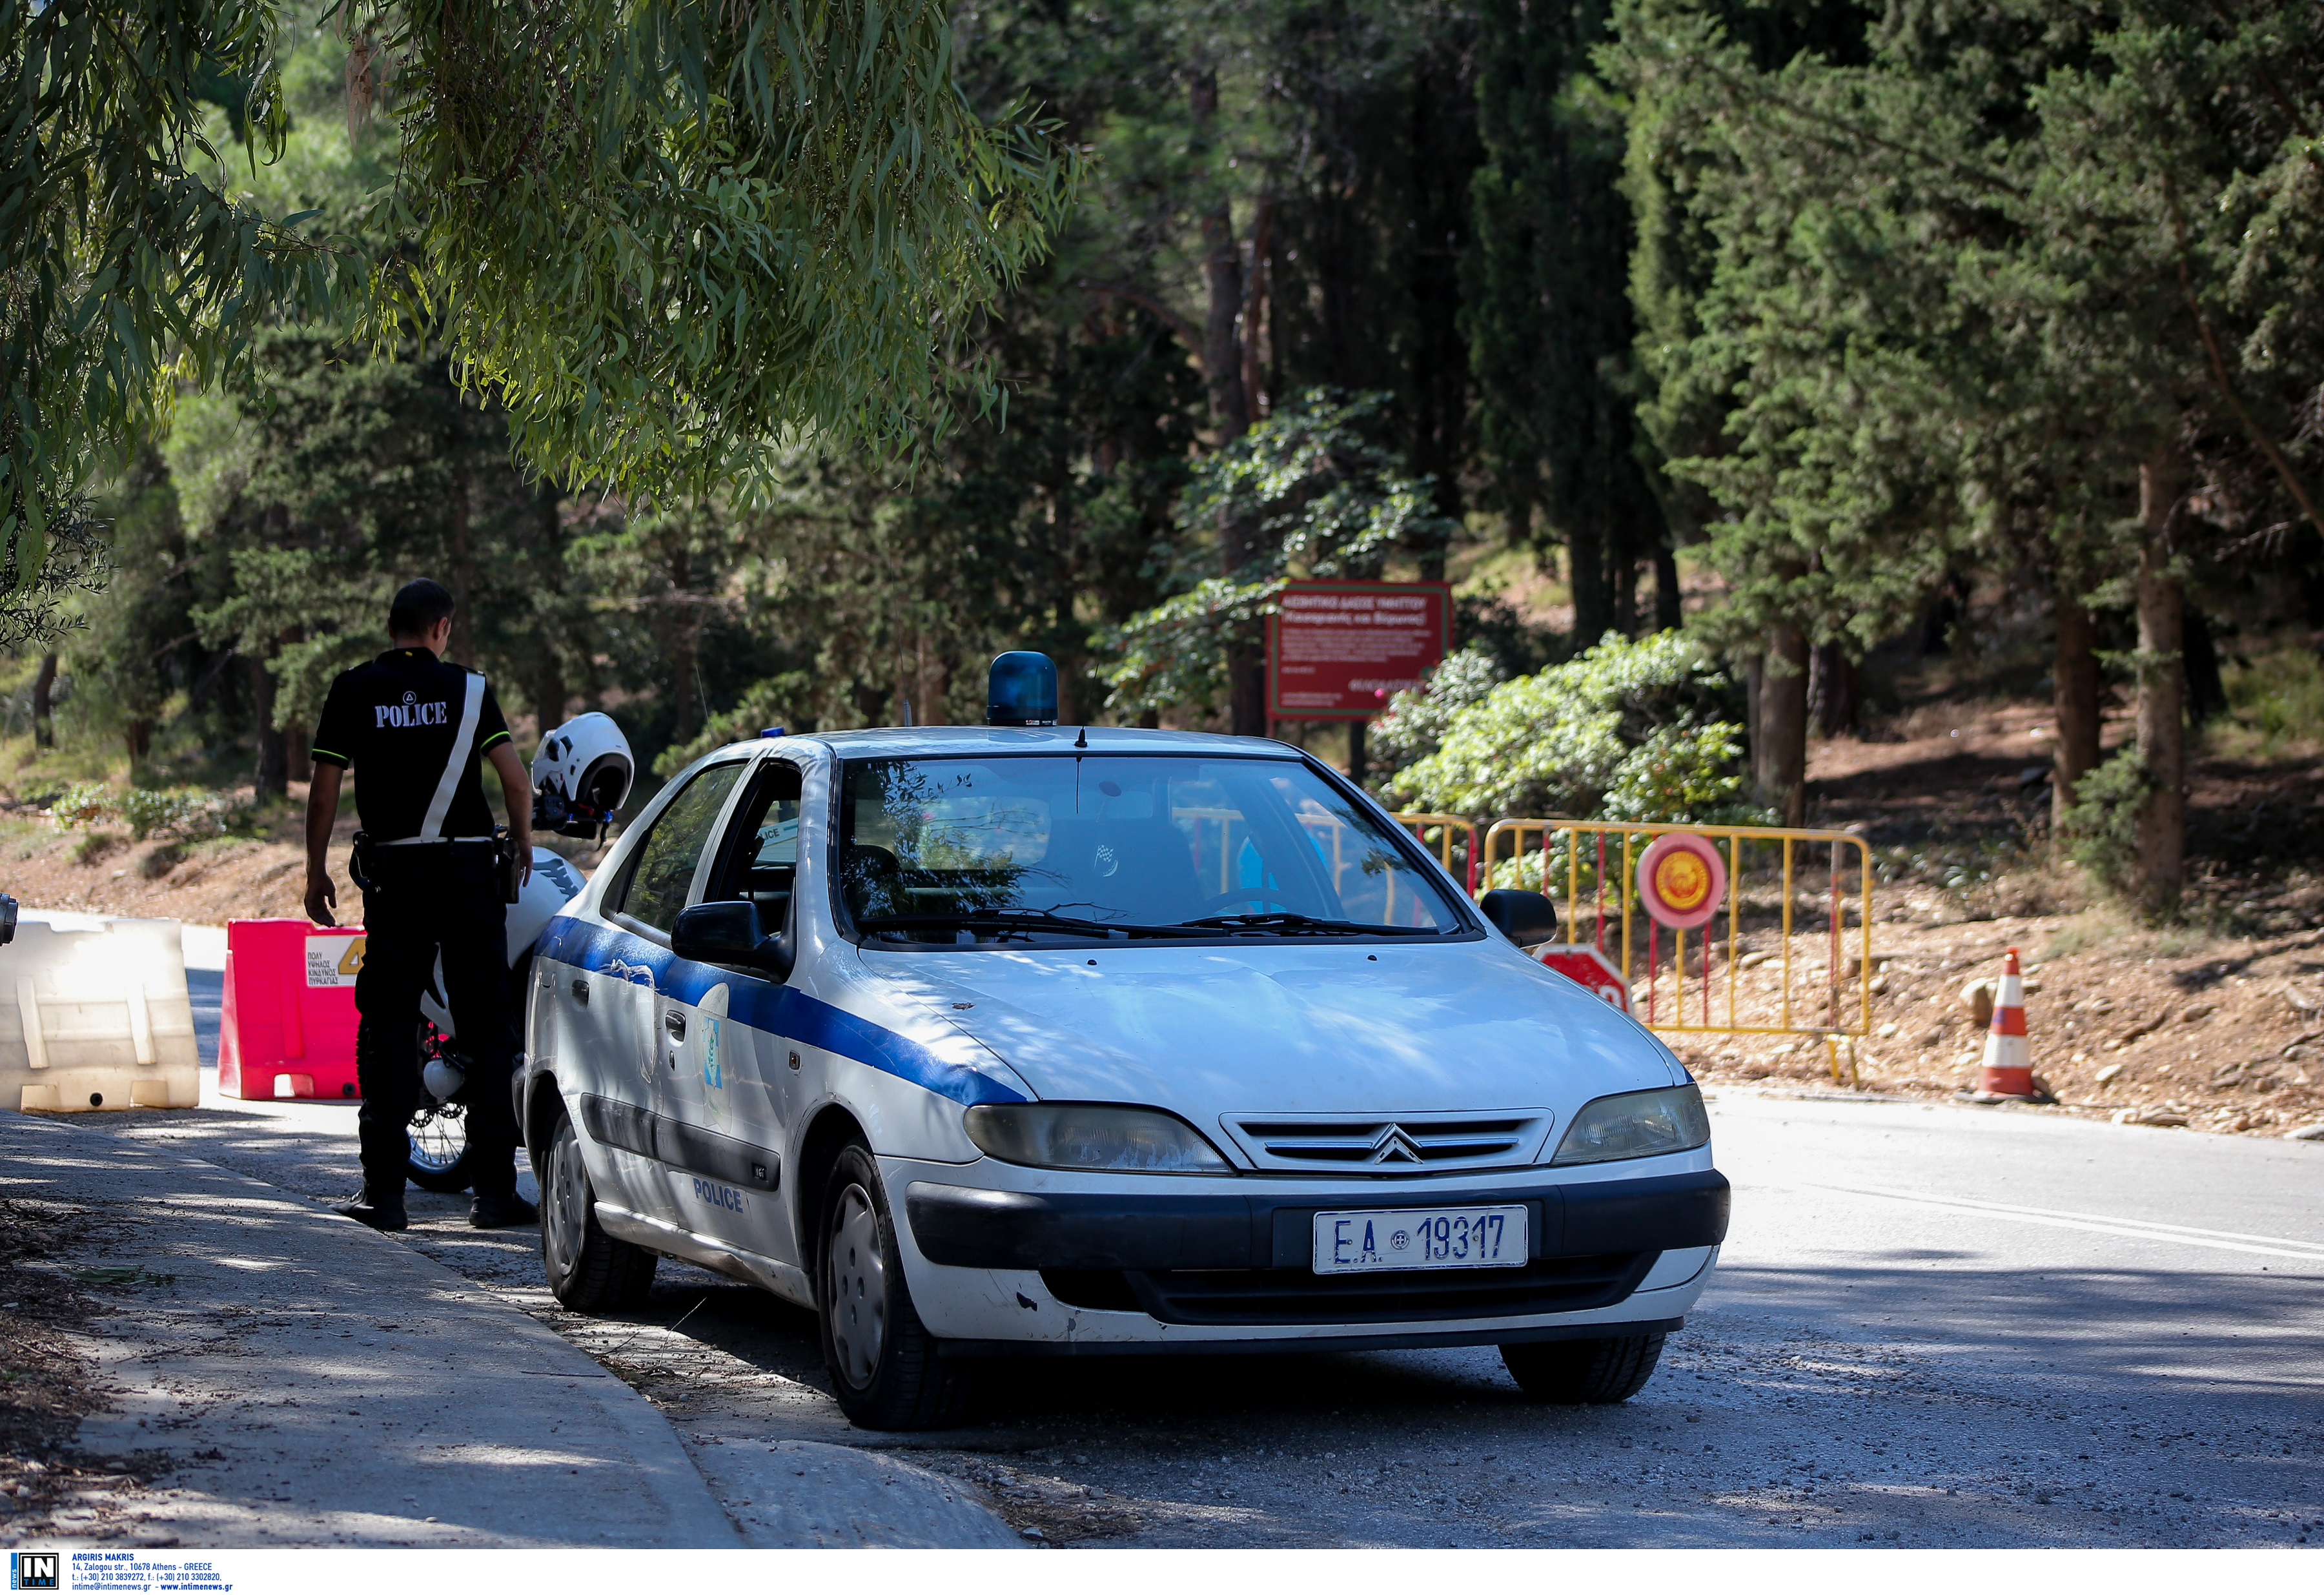 Θεσσαλονίκη: Λύθηκε το μυστήριο για το ακέφαλο πτώμα στο νοσοκομείο “Παπαγεωργίου” – Θλίψη από την αποκάλυψη!